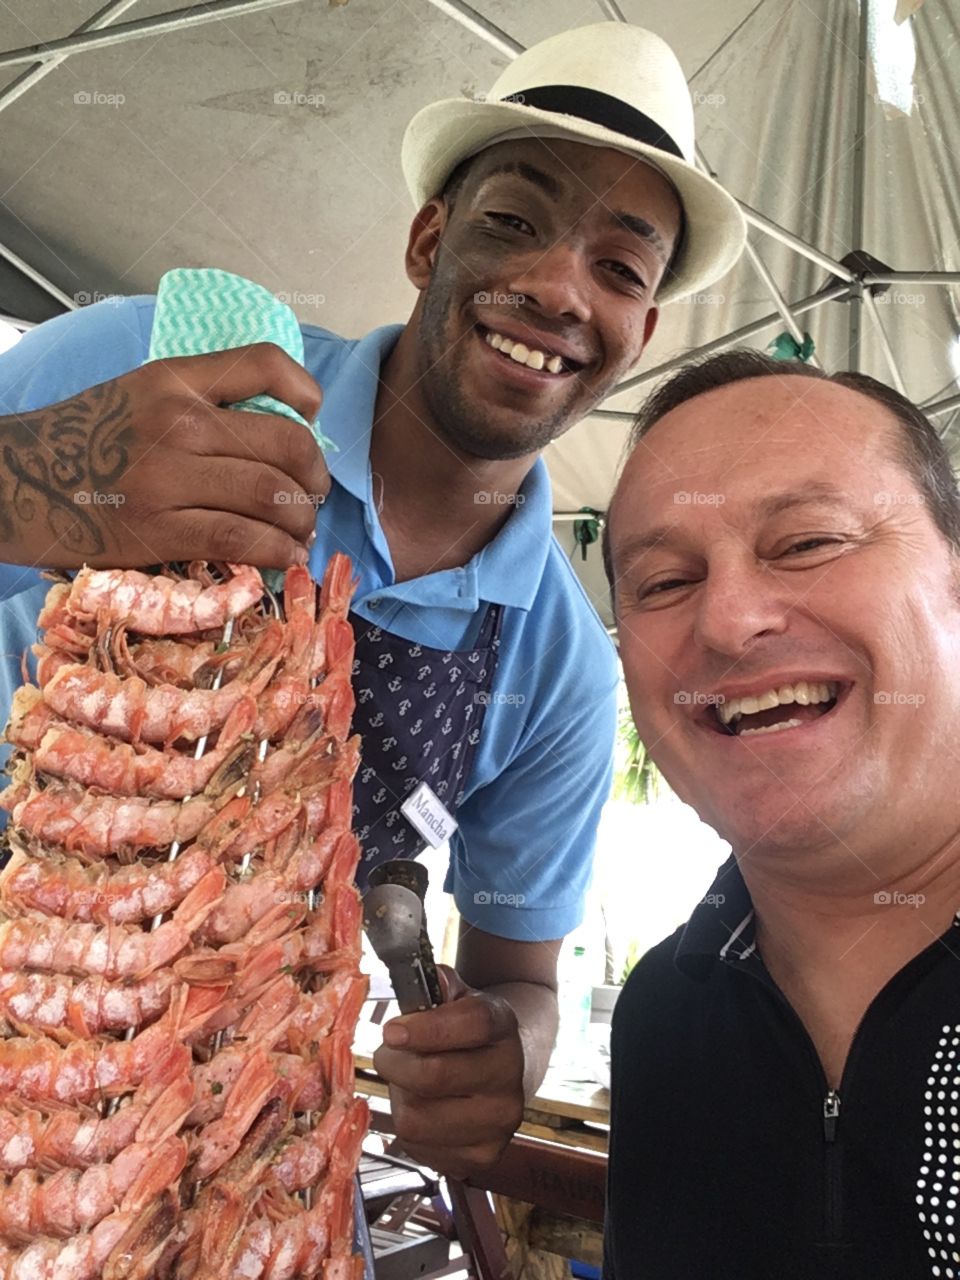 No #tbt de hoje, um almoço maravilhoso no Festival Gastronômico de Frutos do Mar do Ceagesp. Quem quer camarão?🇧🇷 🦐
At #tbt today, a wonderful lunch at the Ceagesp Seafood Gastronomic Festival. Who wants shrimp? 🇺🇸🍤